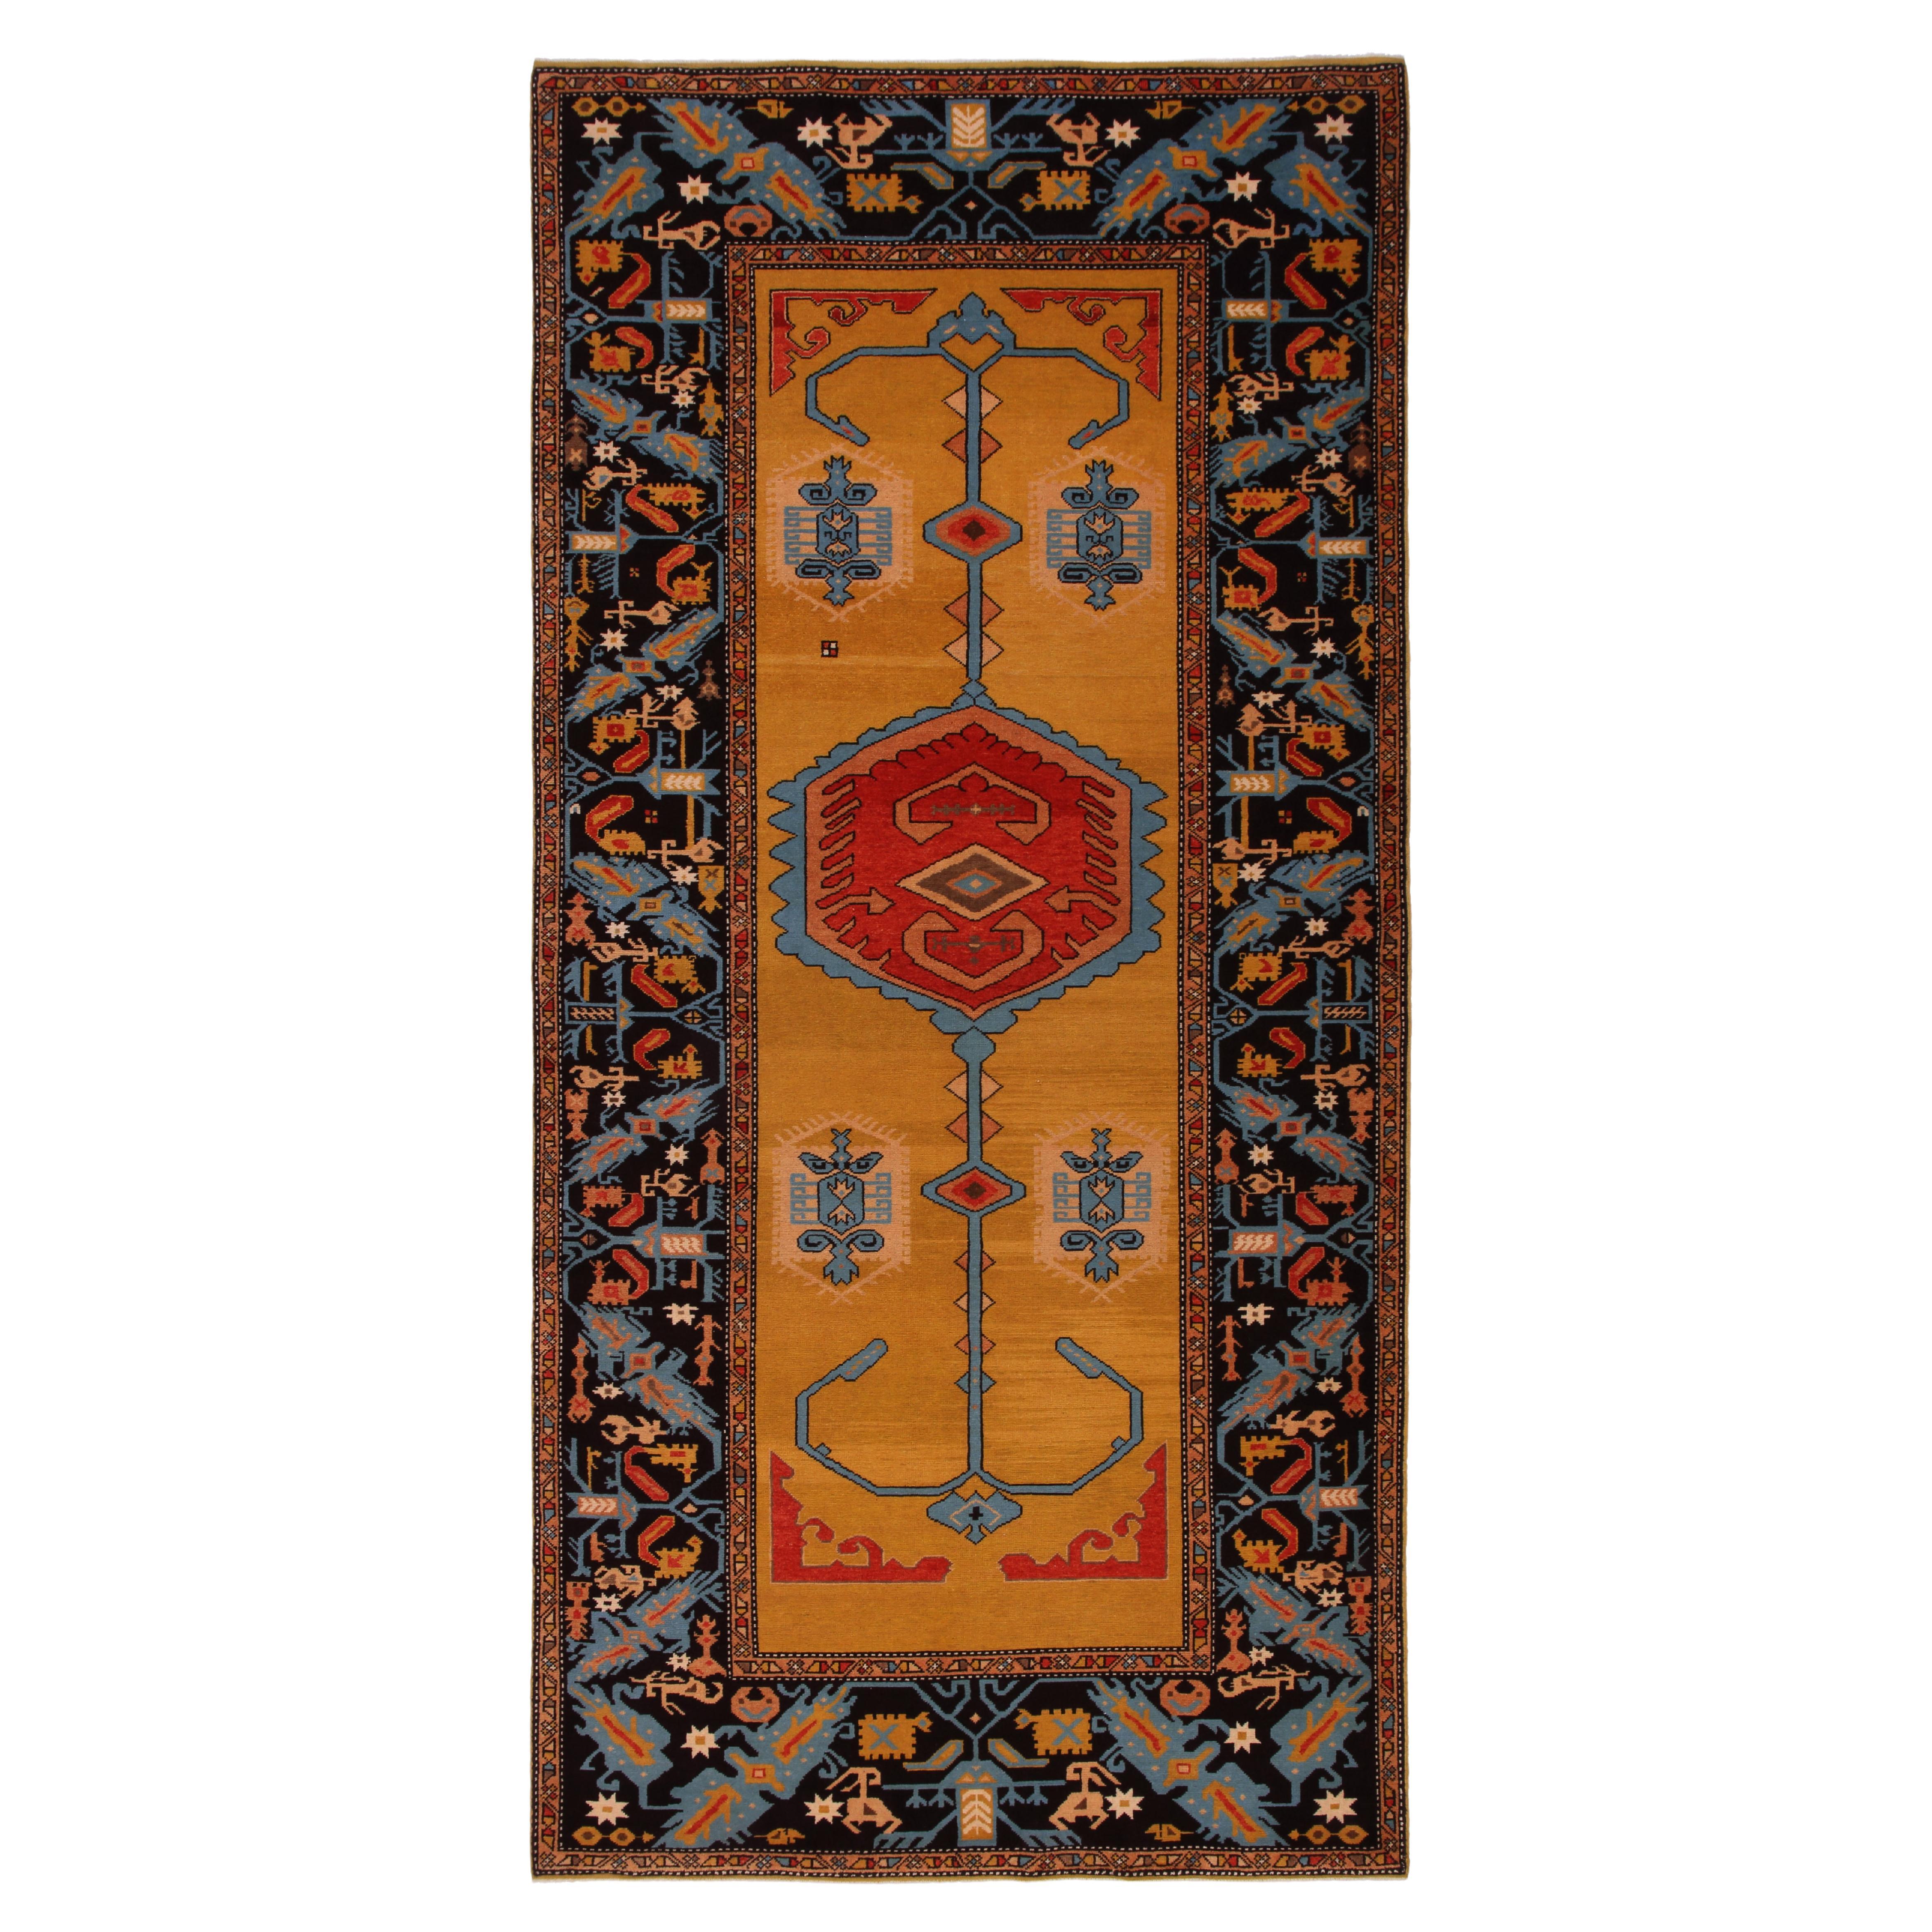 Ararat-Teppiche, Segel-Anker-Teppich, 17. Jahrhundert, Anatolisches Revival, Naturfarben